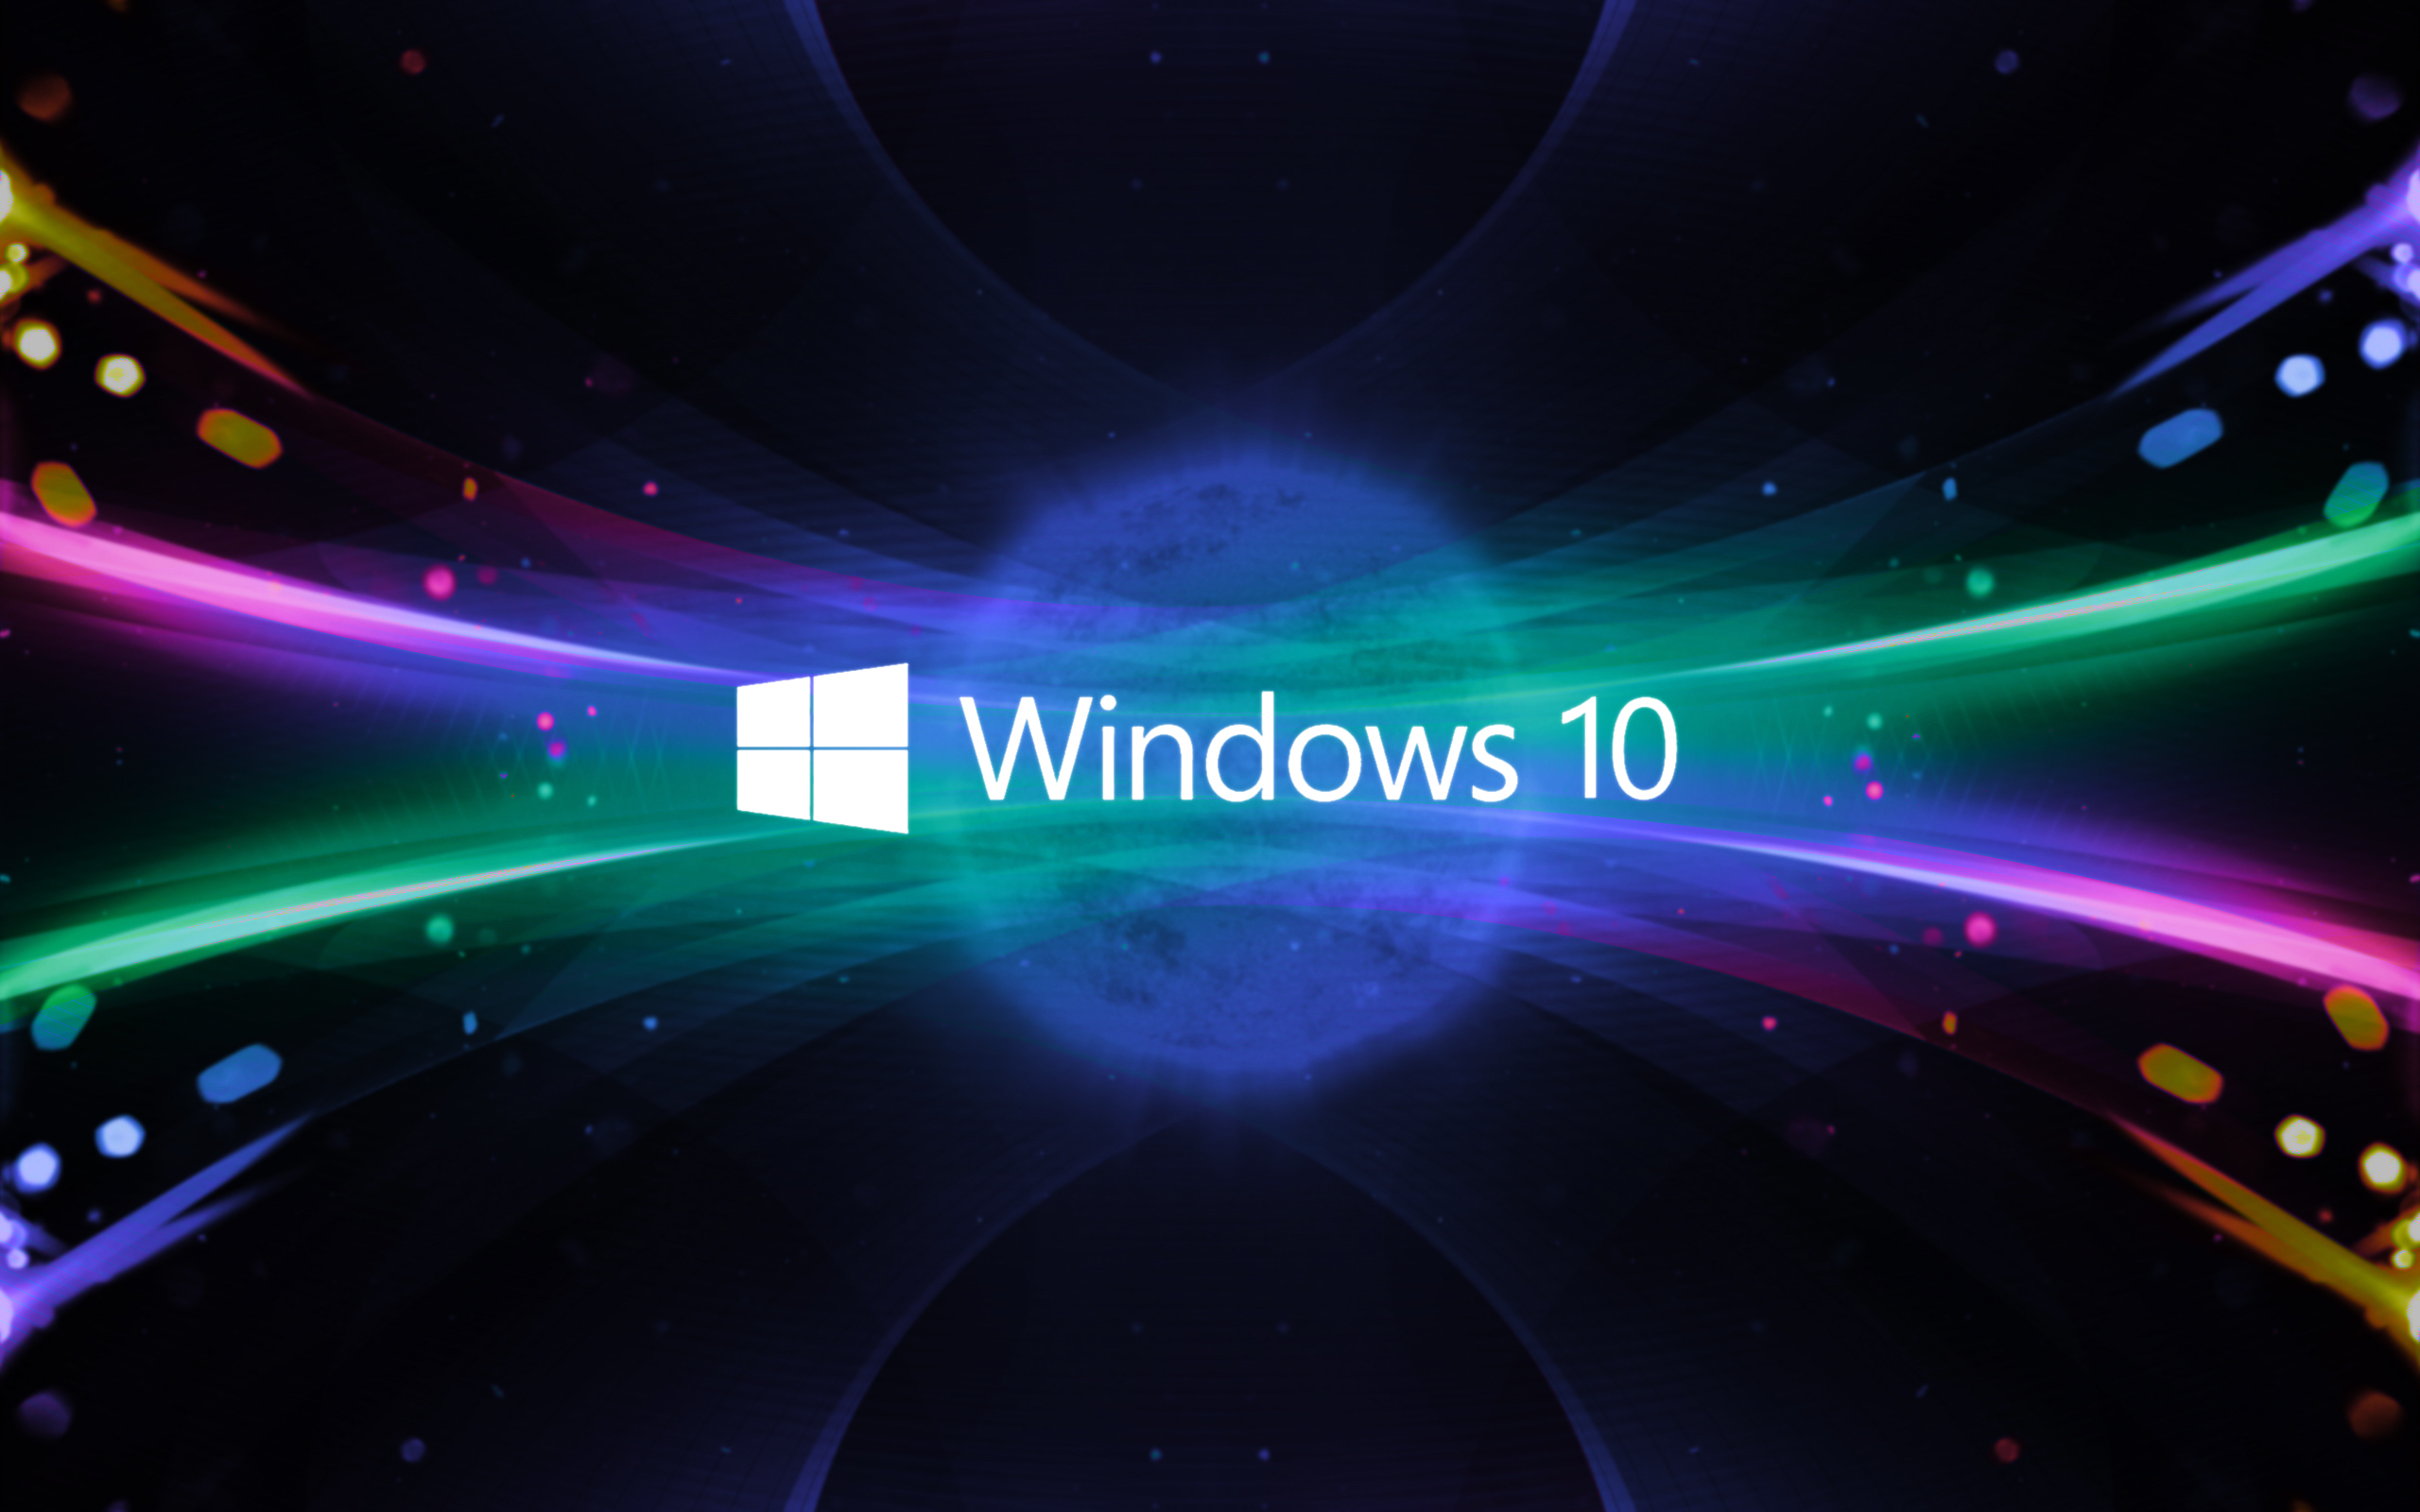 Bạn đang muốn nâng cấp lên Windows 10 nhưng còn băn khoăn? Đừng lo, hãy tham khảo ngay 10 lý do không nên nâng cấp lên Windows 10 ngay bây giờ trên Hỗ trợ IT mới. Bạn sẽ được thông tin cần thiết để quyết định tốt nhất cho máy tính của mình.